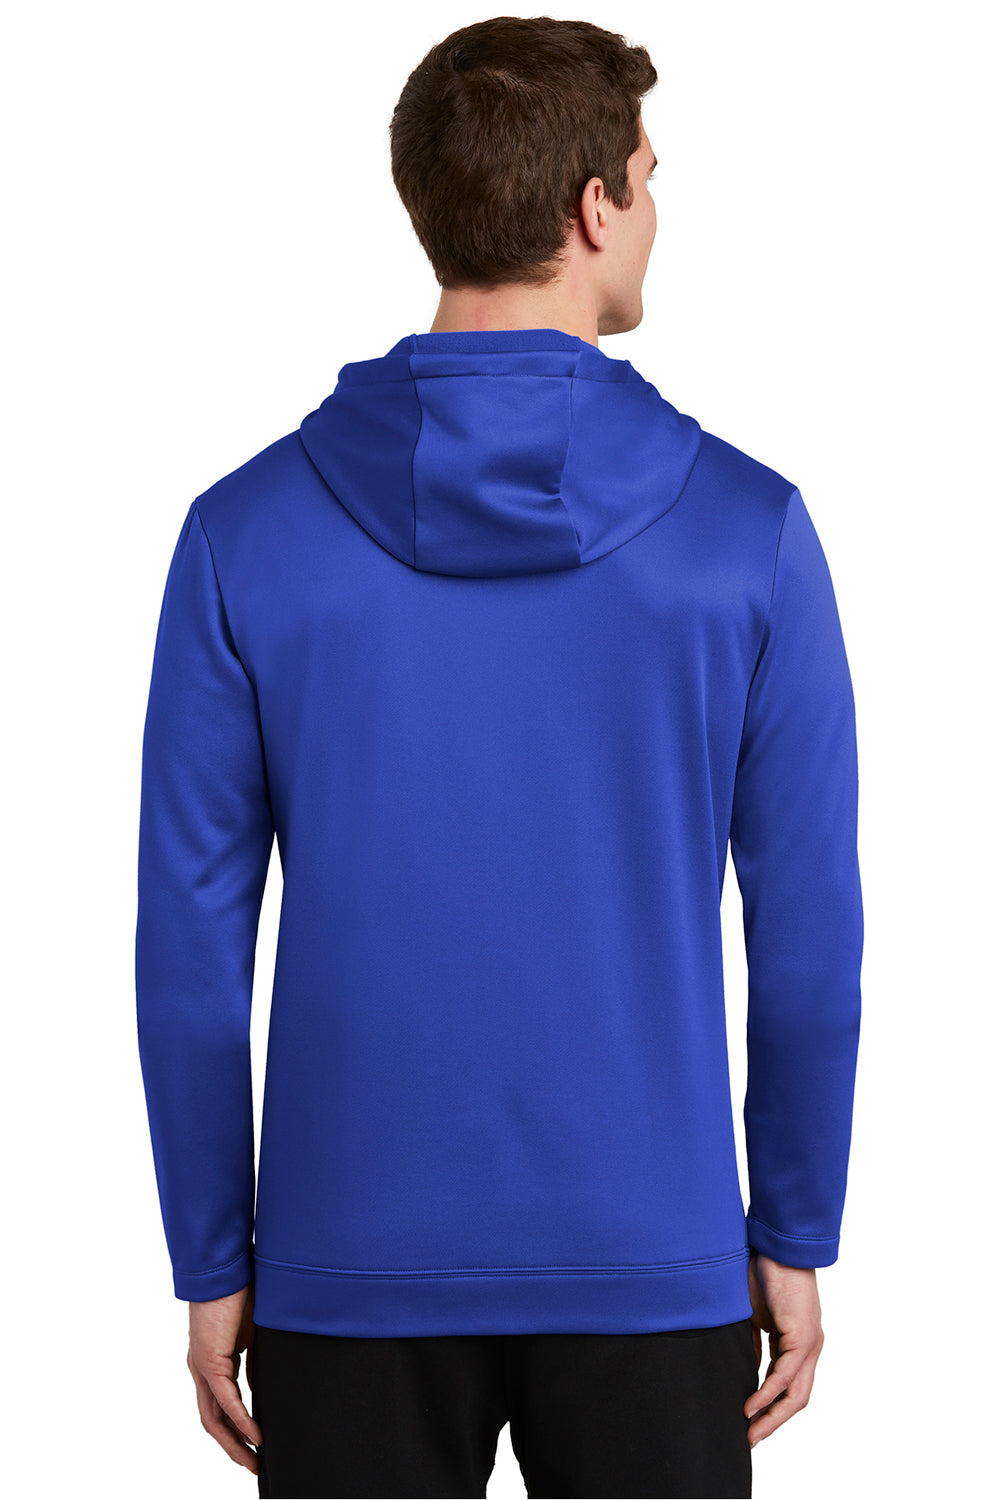 Nike NKAH6259 Mens Therma-Fit Moisture Wicking Fleece Full Zip Hooded Sweatshirt Hoodie Game Royal Blue Model Back